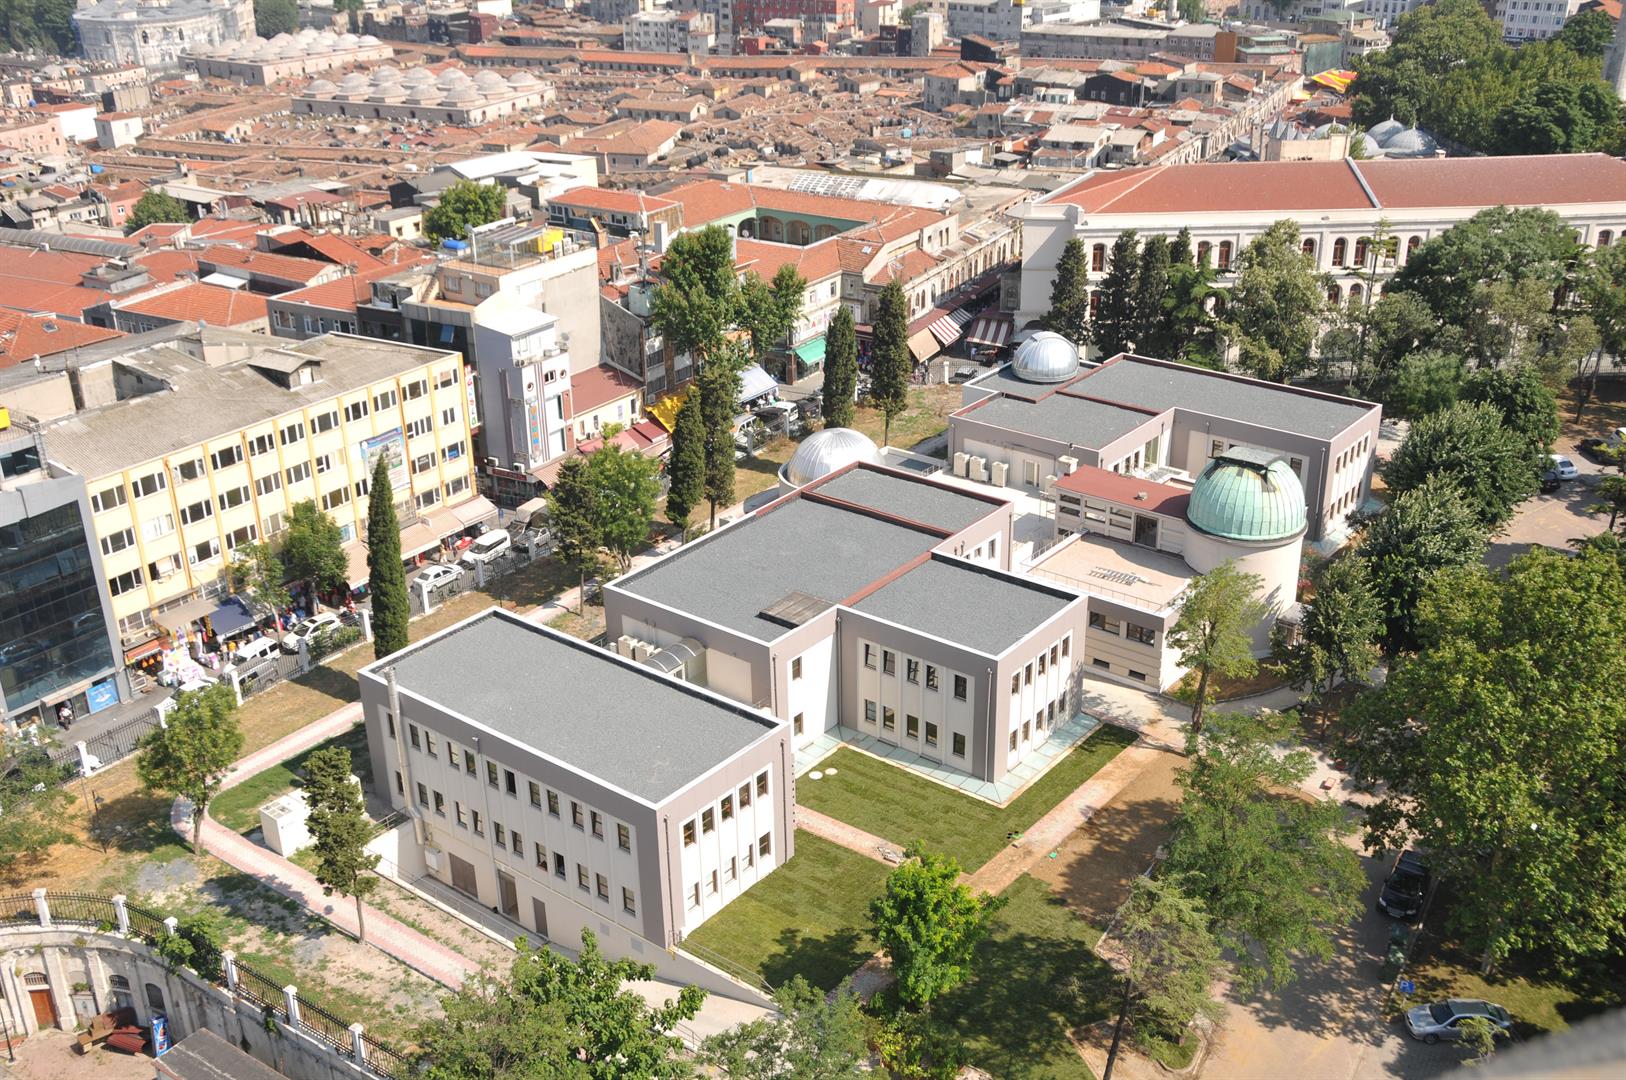 istanbul universitsi fen fakultesi astronomi ve uzay bilimleri bolumu